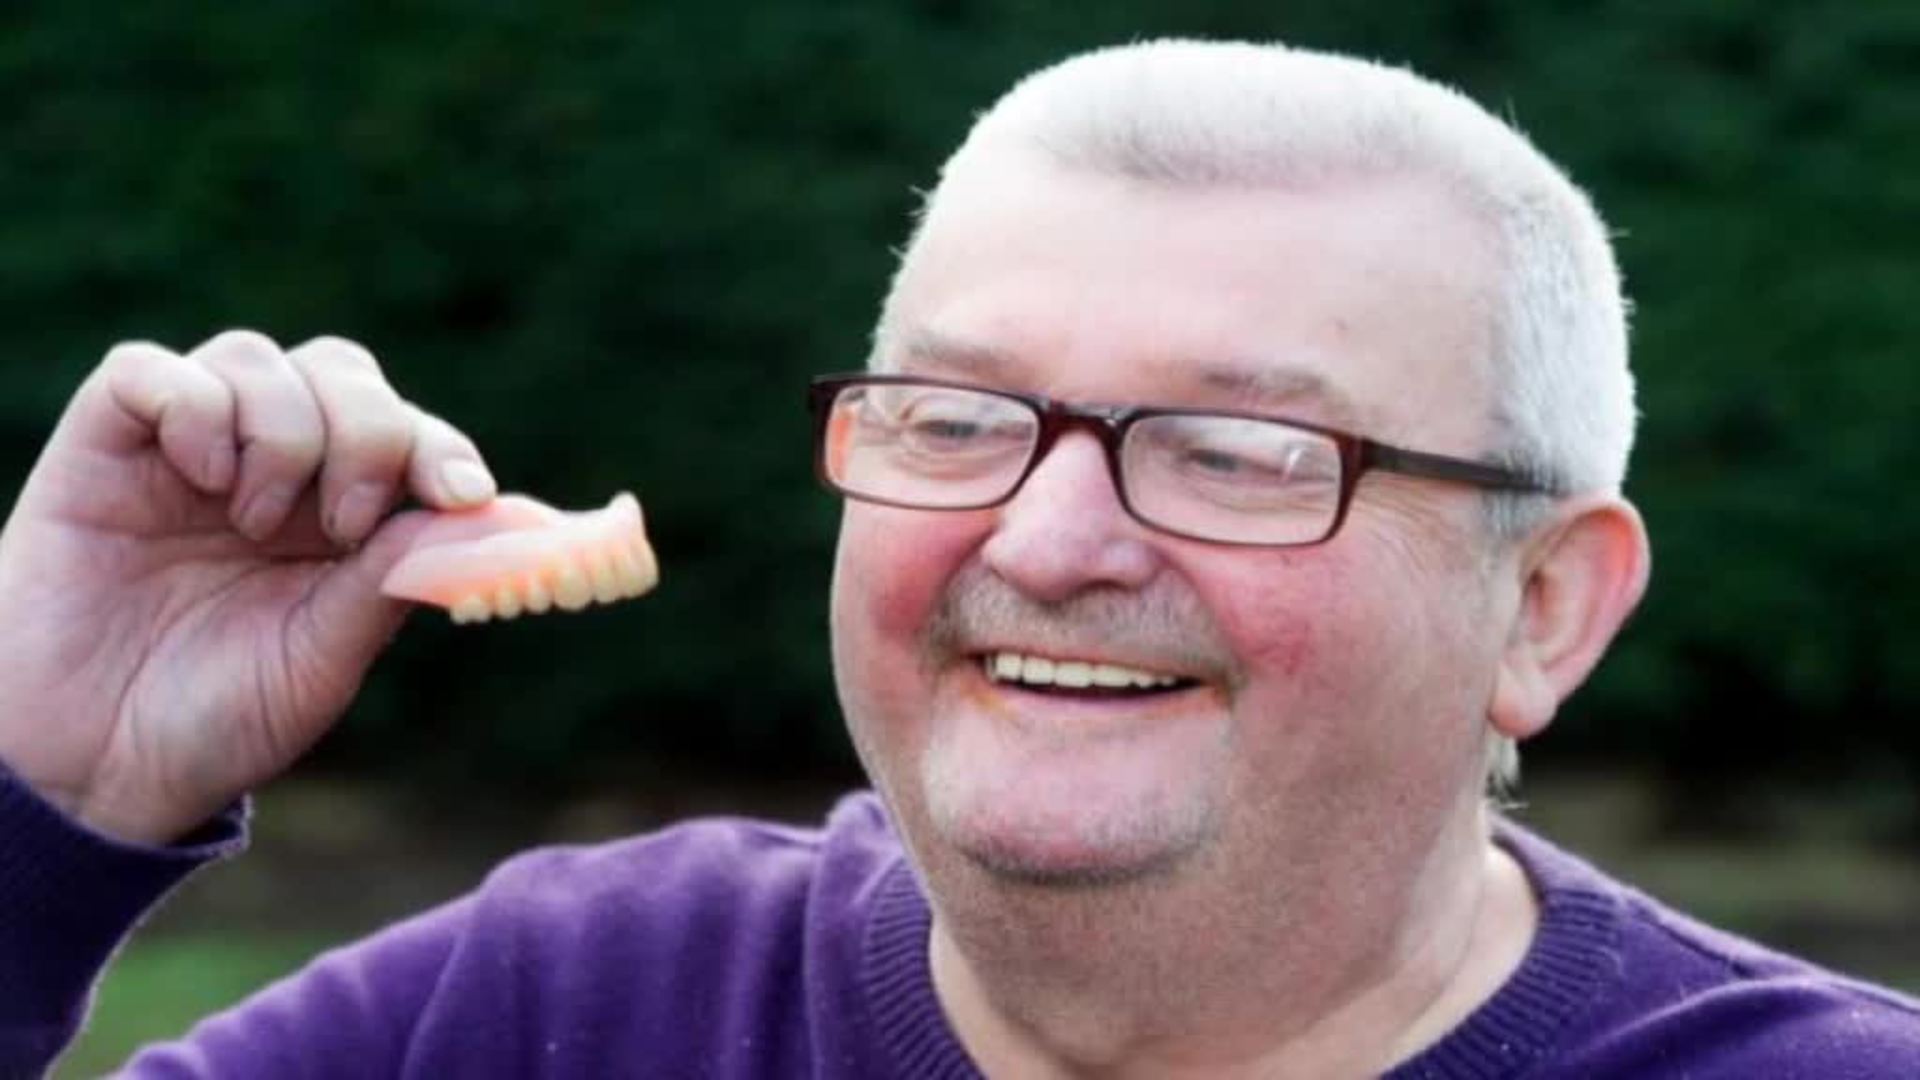 Un ciudadano británico recupera su dentadura postiza perdia en Benidorm hace más de una década